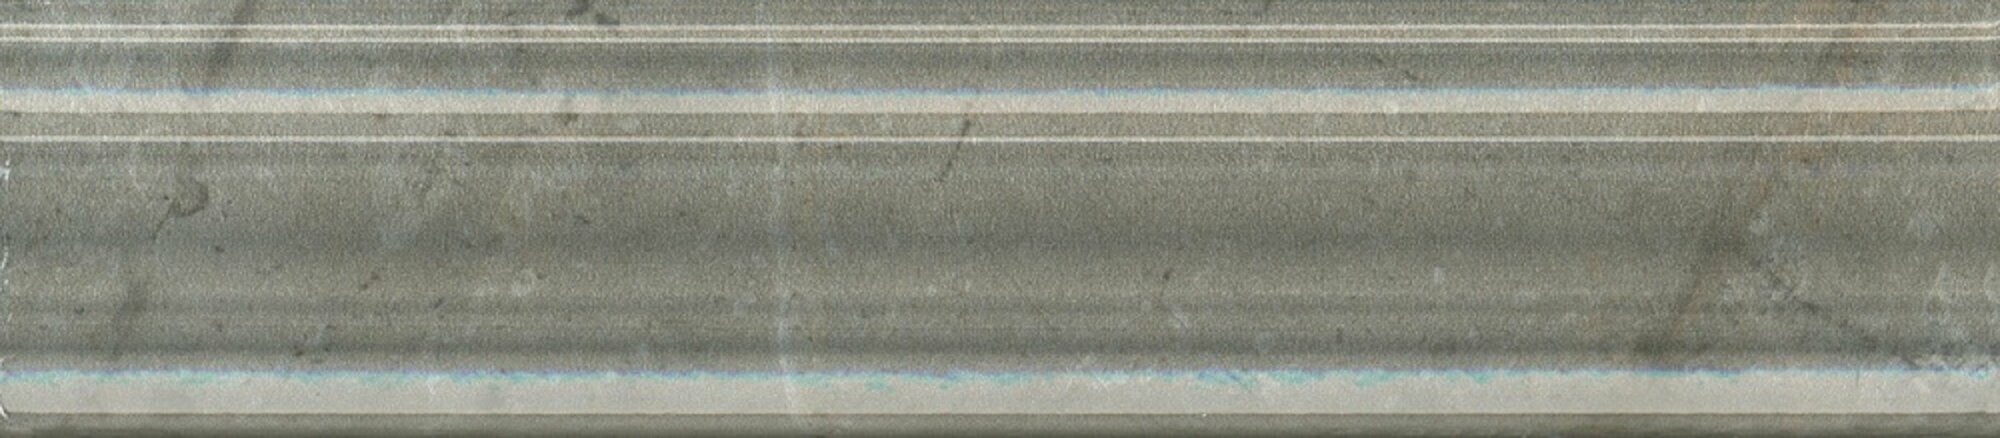 Бордюр KERAMA MARAZZI Кантата Багет серый глянцевый 25x5,5 см. 80 штук в упаковке